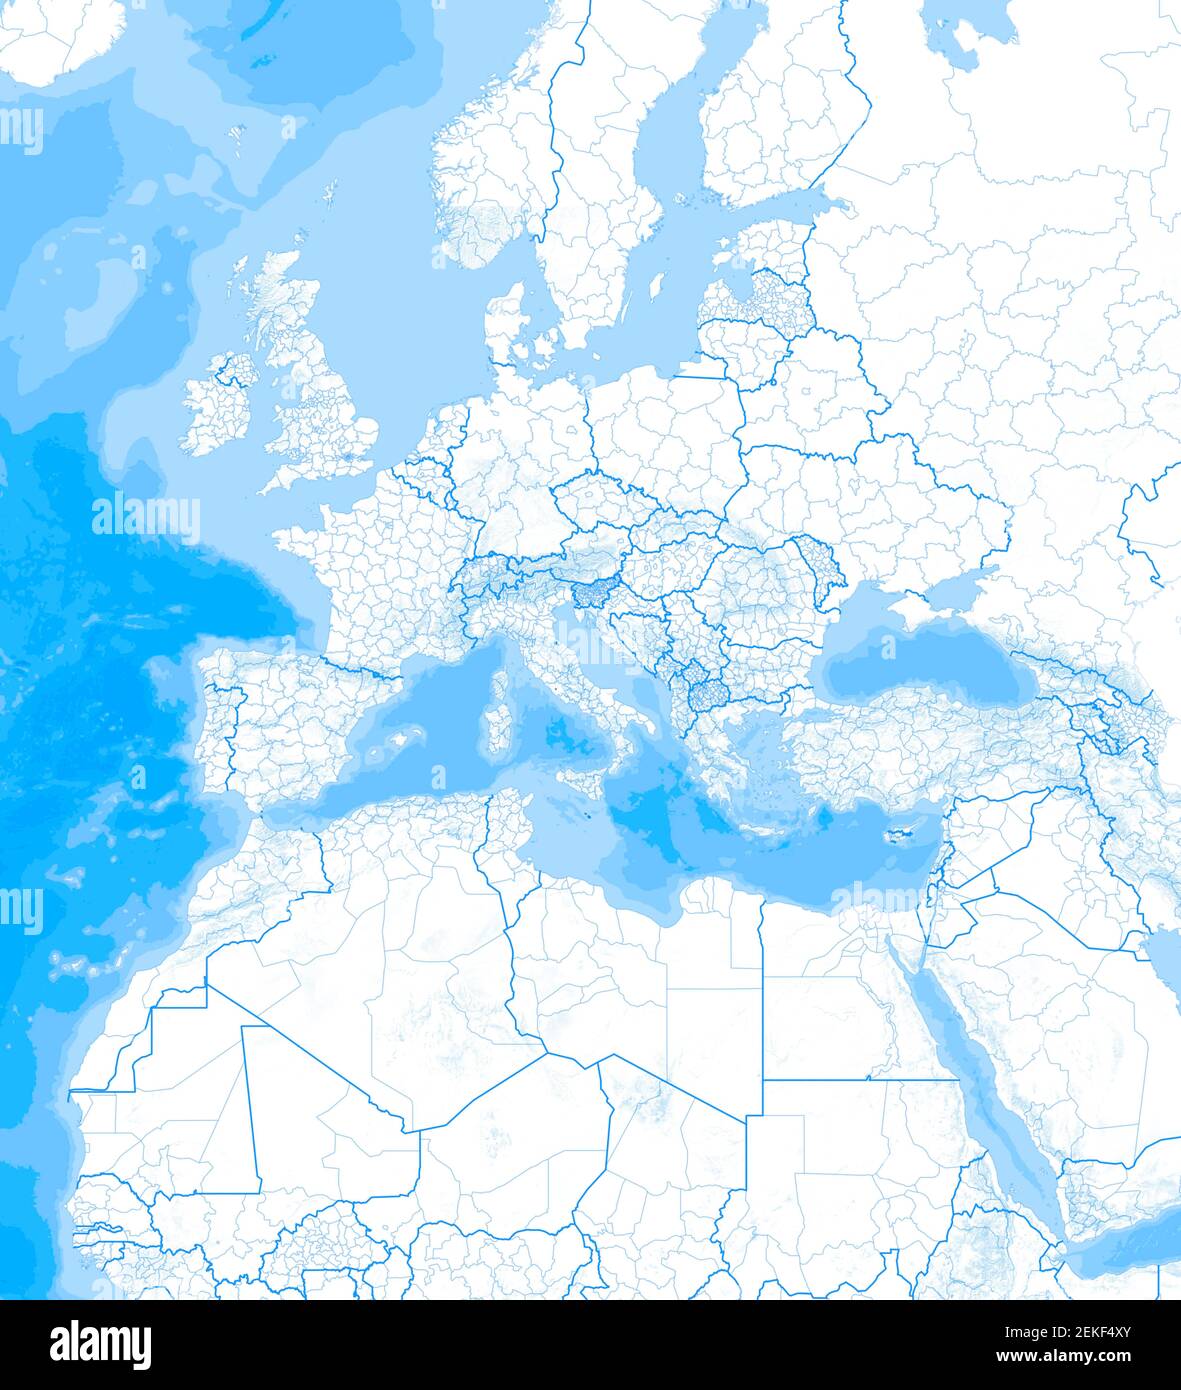 Karte des Mittelmeers und Europas, Afrikas und des Nahen Ostens. Kartographie, geographischer Atlas. 3D Rendern. Grenzen und Bergrelief Stockfoto